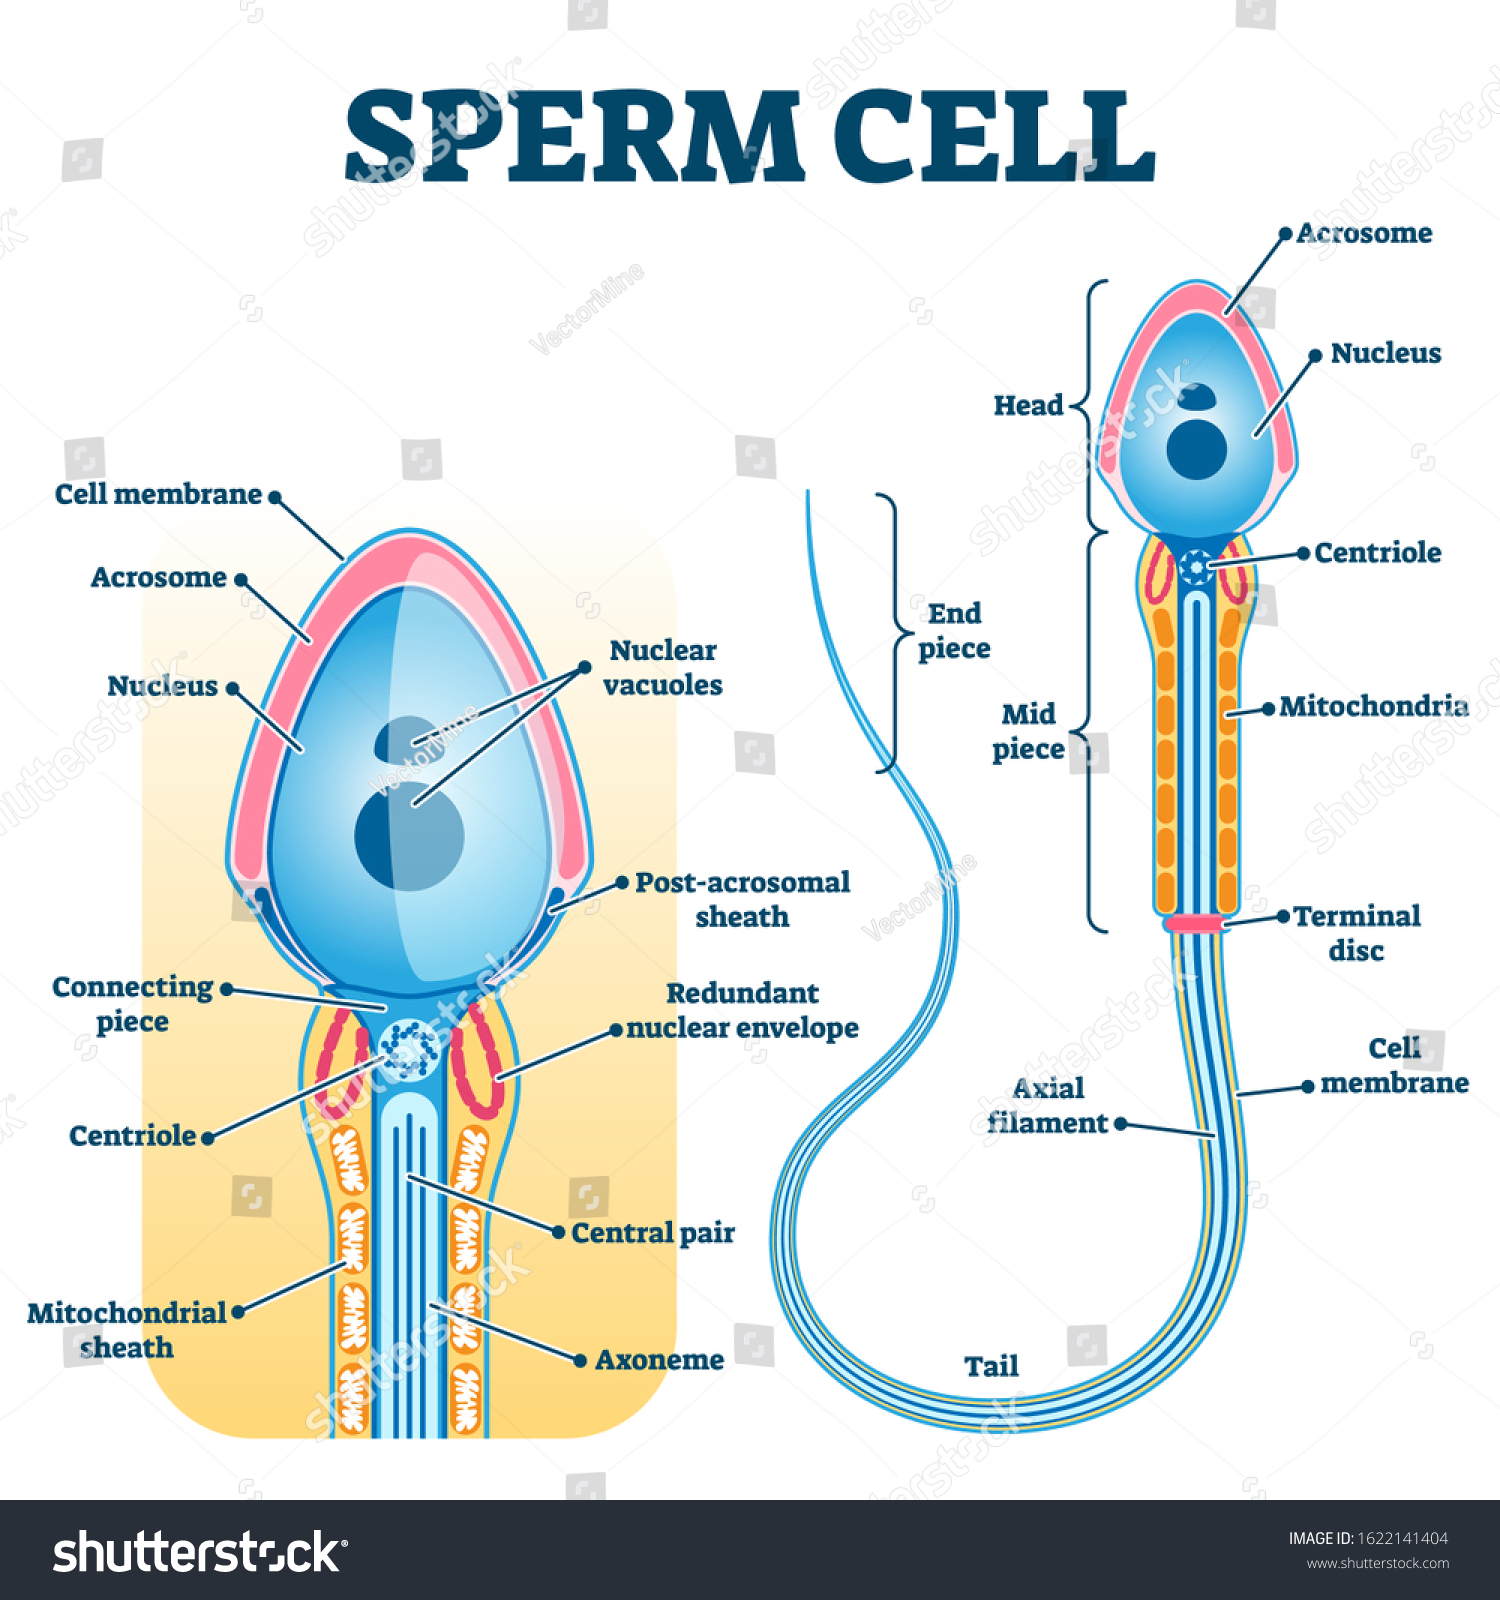 где в организме храниться сперма фото 17